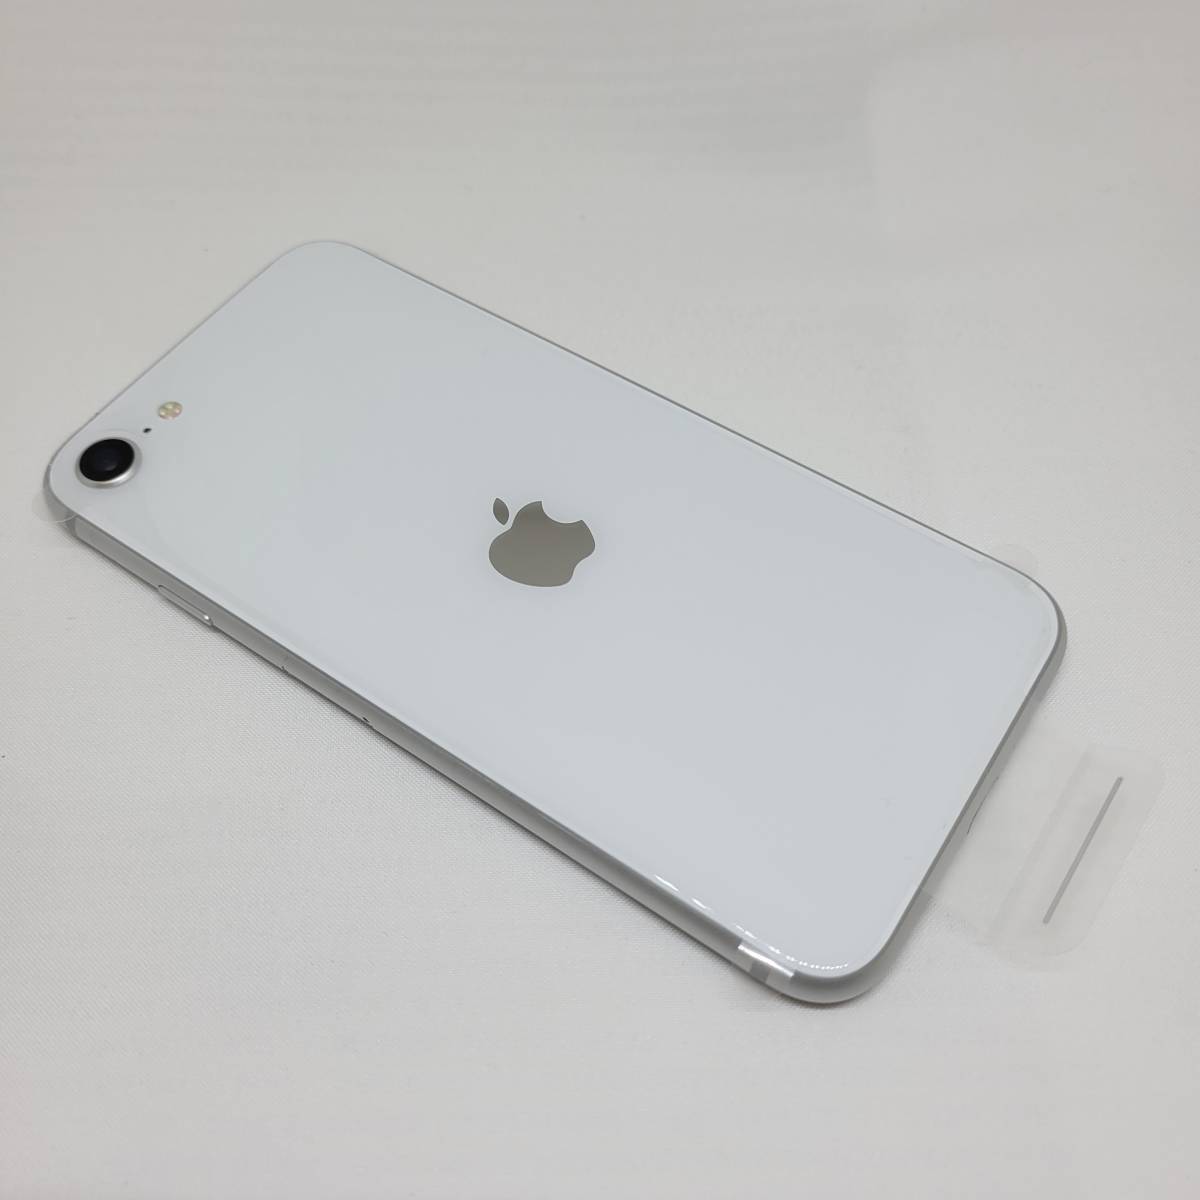 新品同等 iPhone SE 第2世代 128GB ホワイト A2275 北米版 SIMフリー シャッター音なし 送料無料 国内発送 IMEI 356465107681947